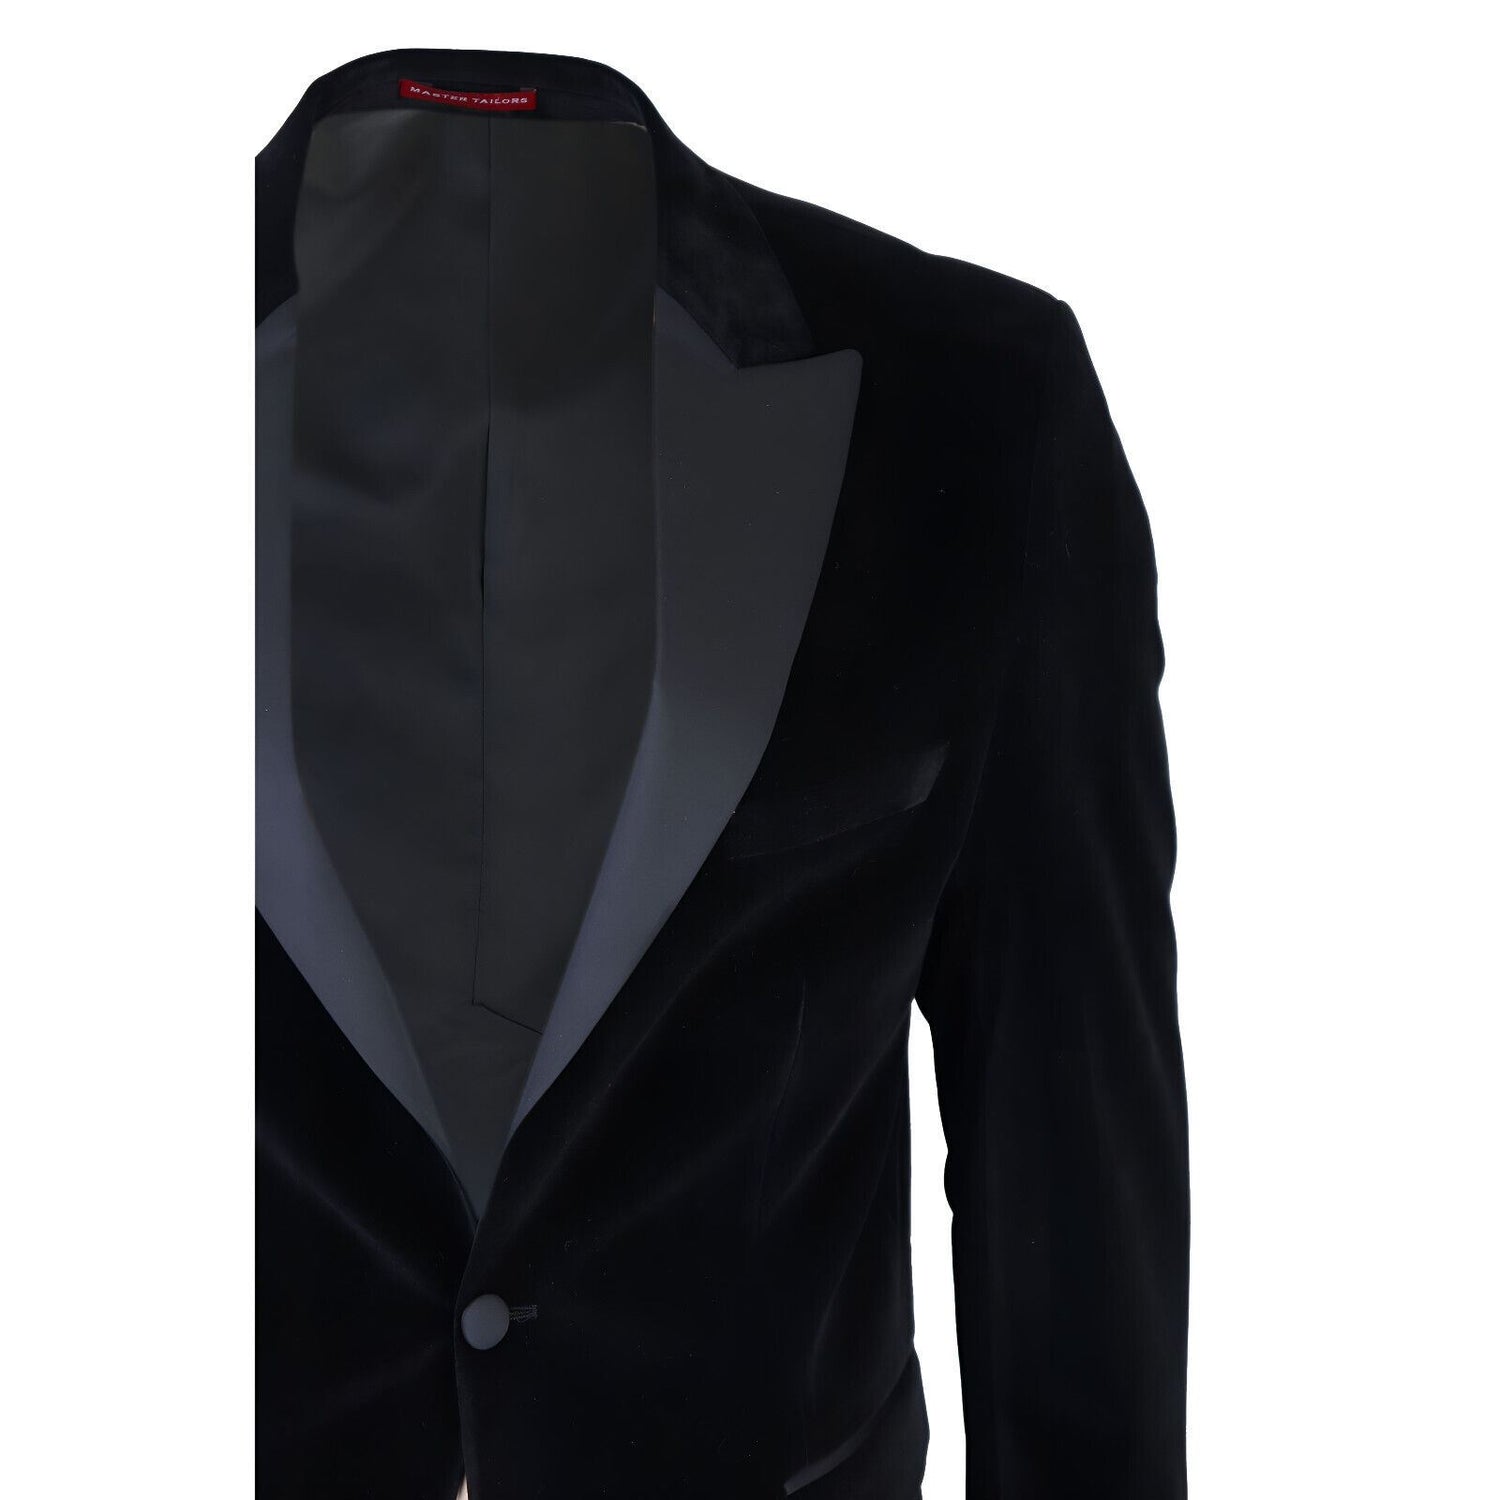 Mens Black Velvet Dinner Tuxedo Suit Jacket Blazer